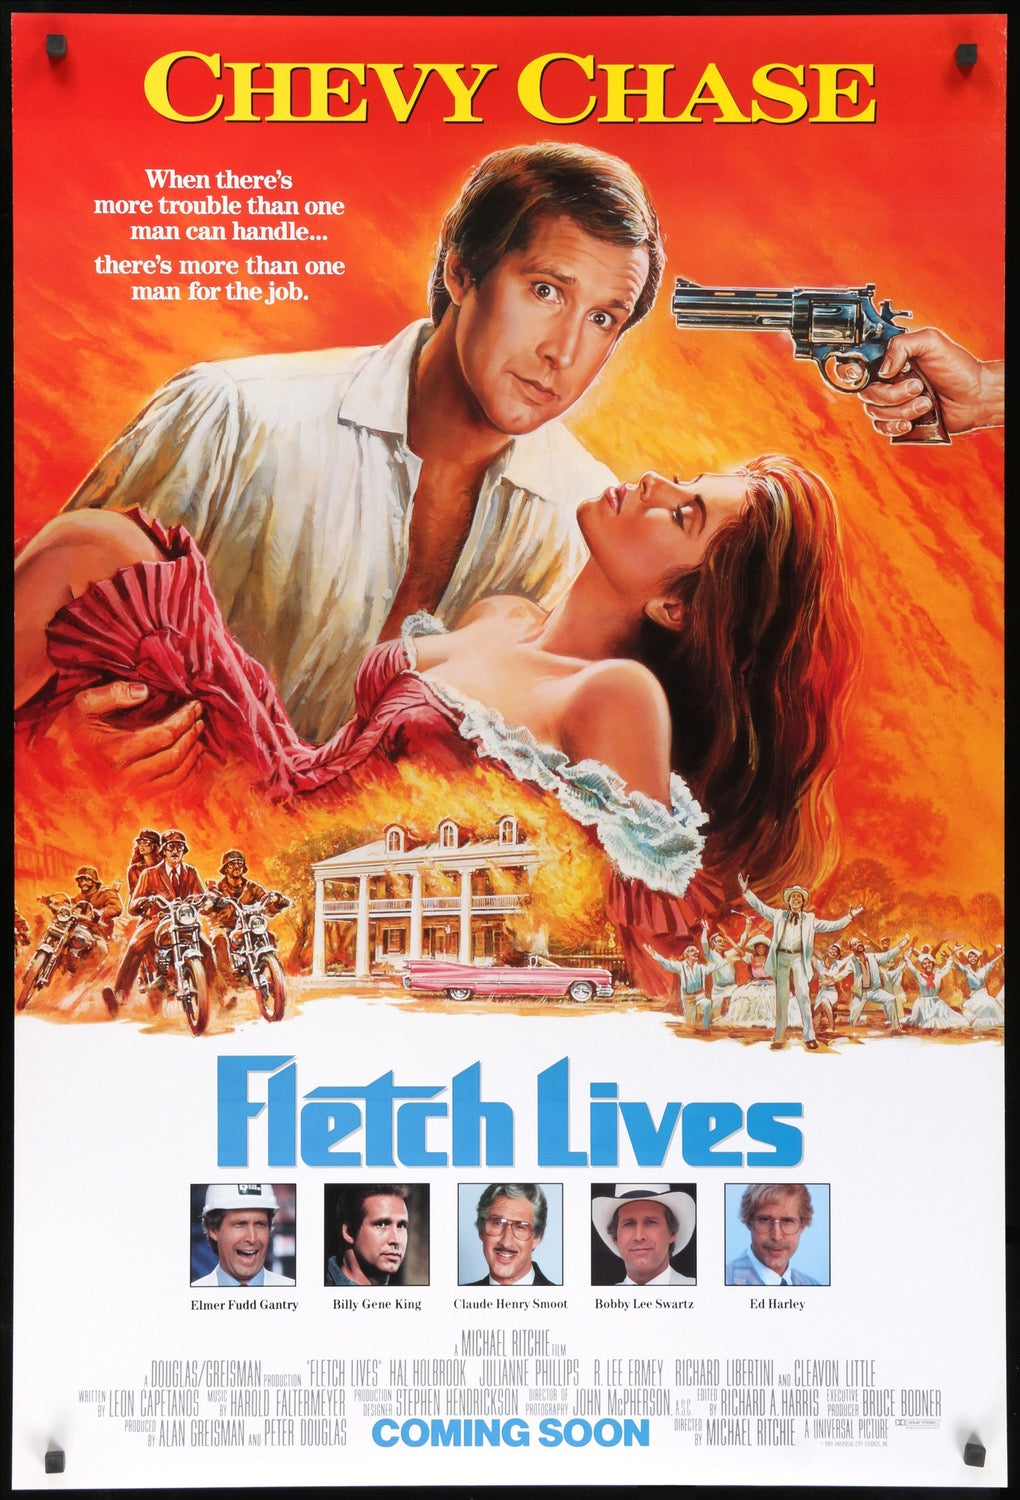 Fletch Lives (1989) original movie poster for sale at Original Film Art